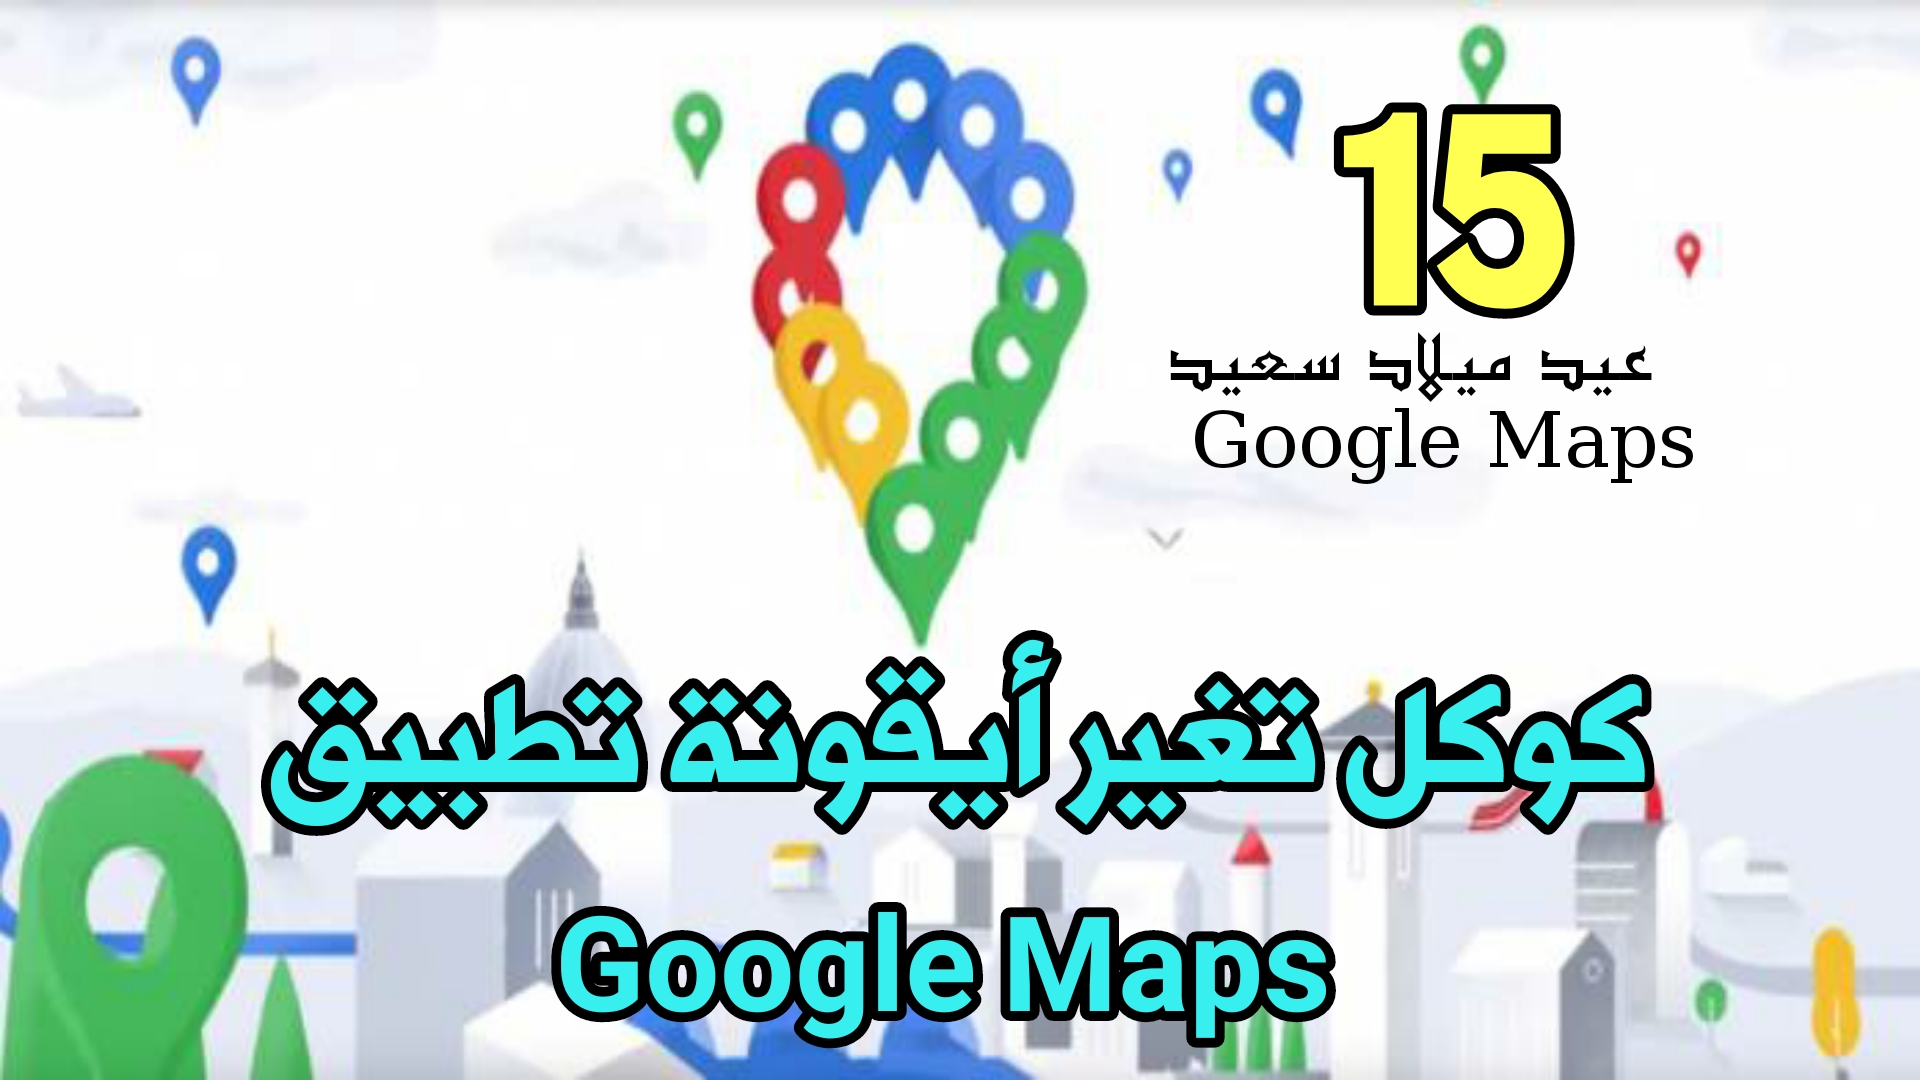 كوكل تغير أيقونة تطبيق Google Maps بمناسبة مرور 15 سنة على أطلاق خدمة خرائط Google